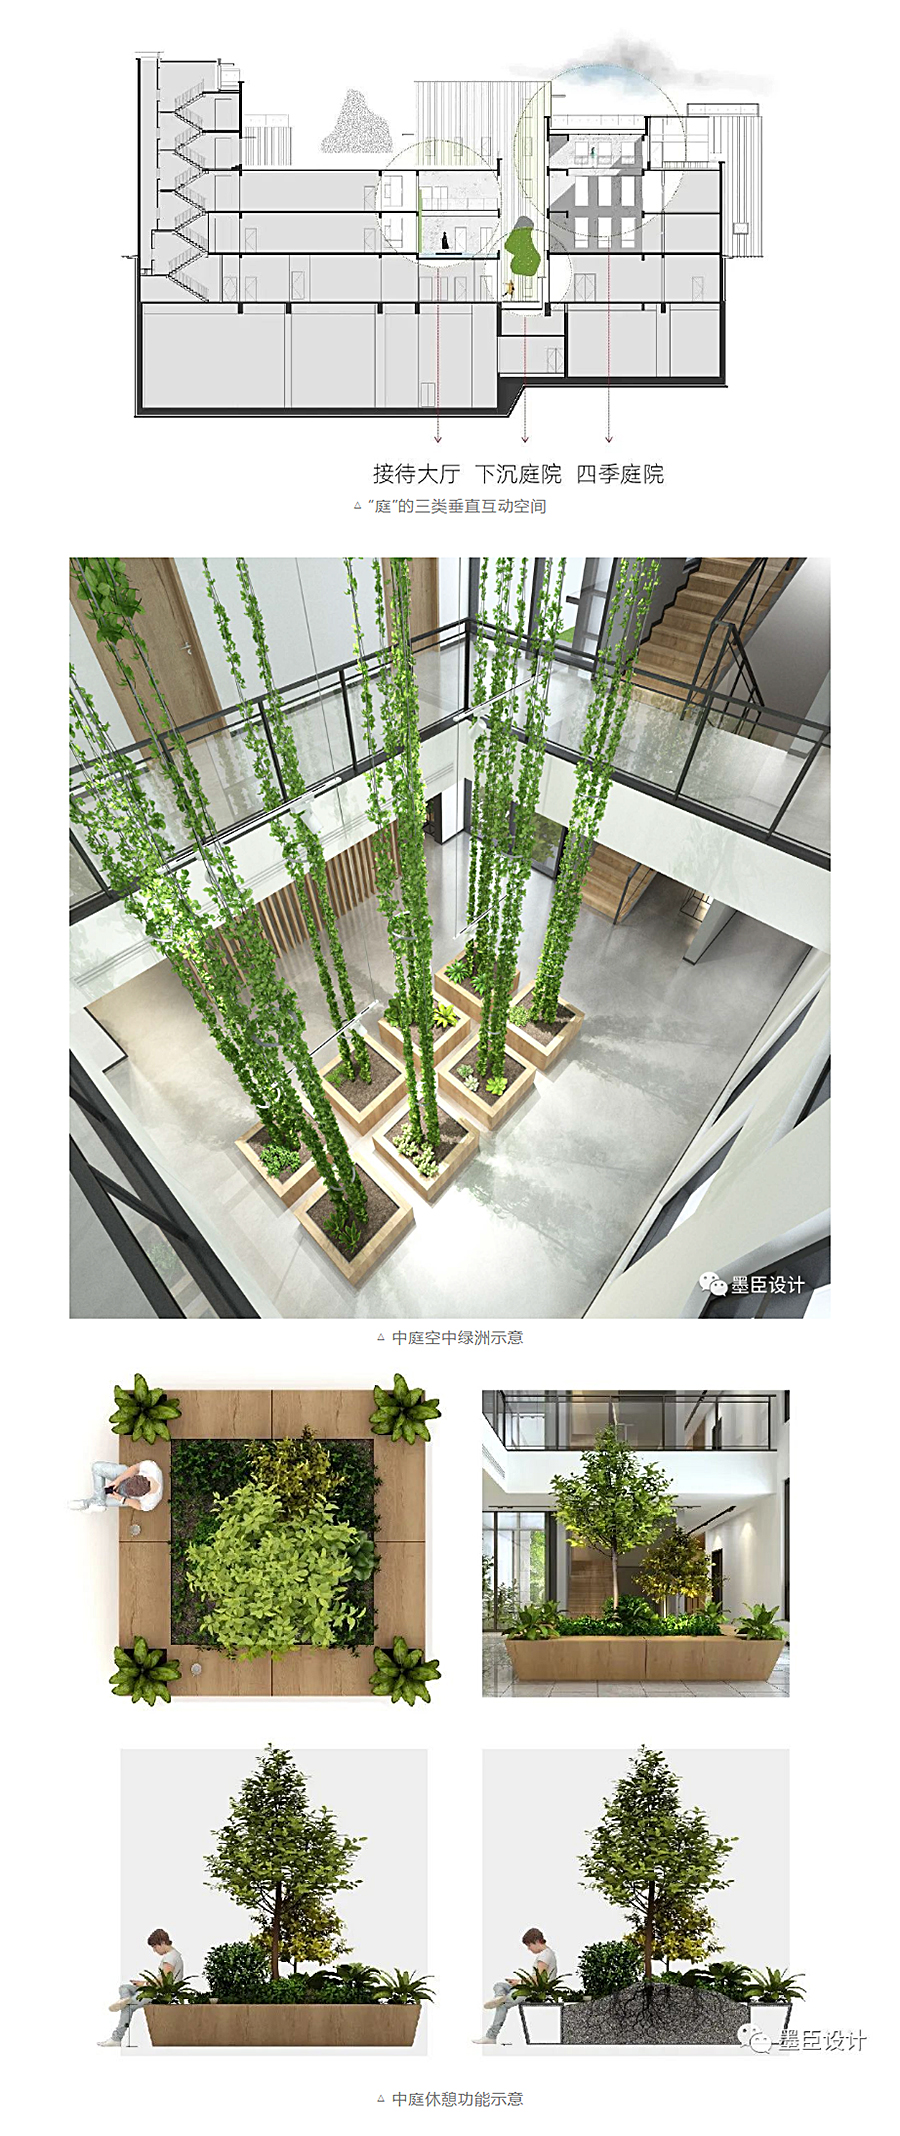 生态办公的游园序列-_-北京花木公司办公楼改造_0015_图层-16.jpg